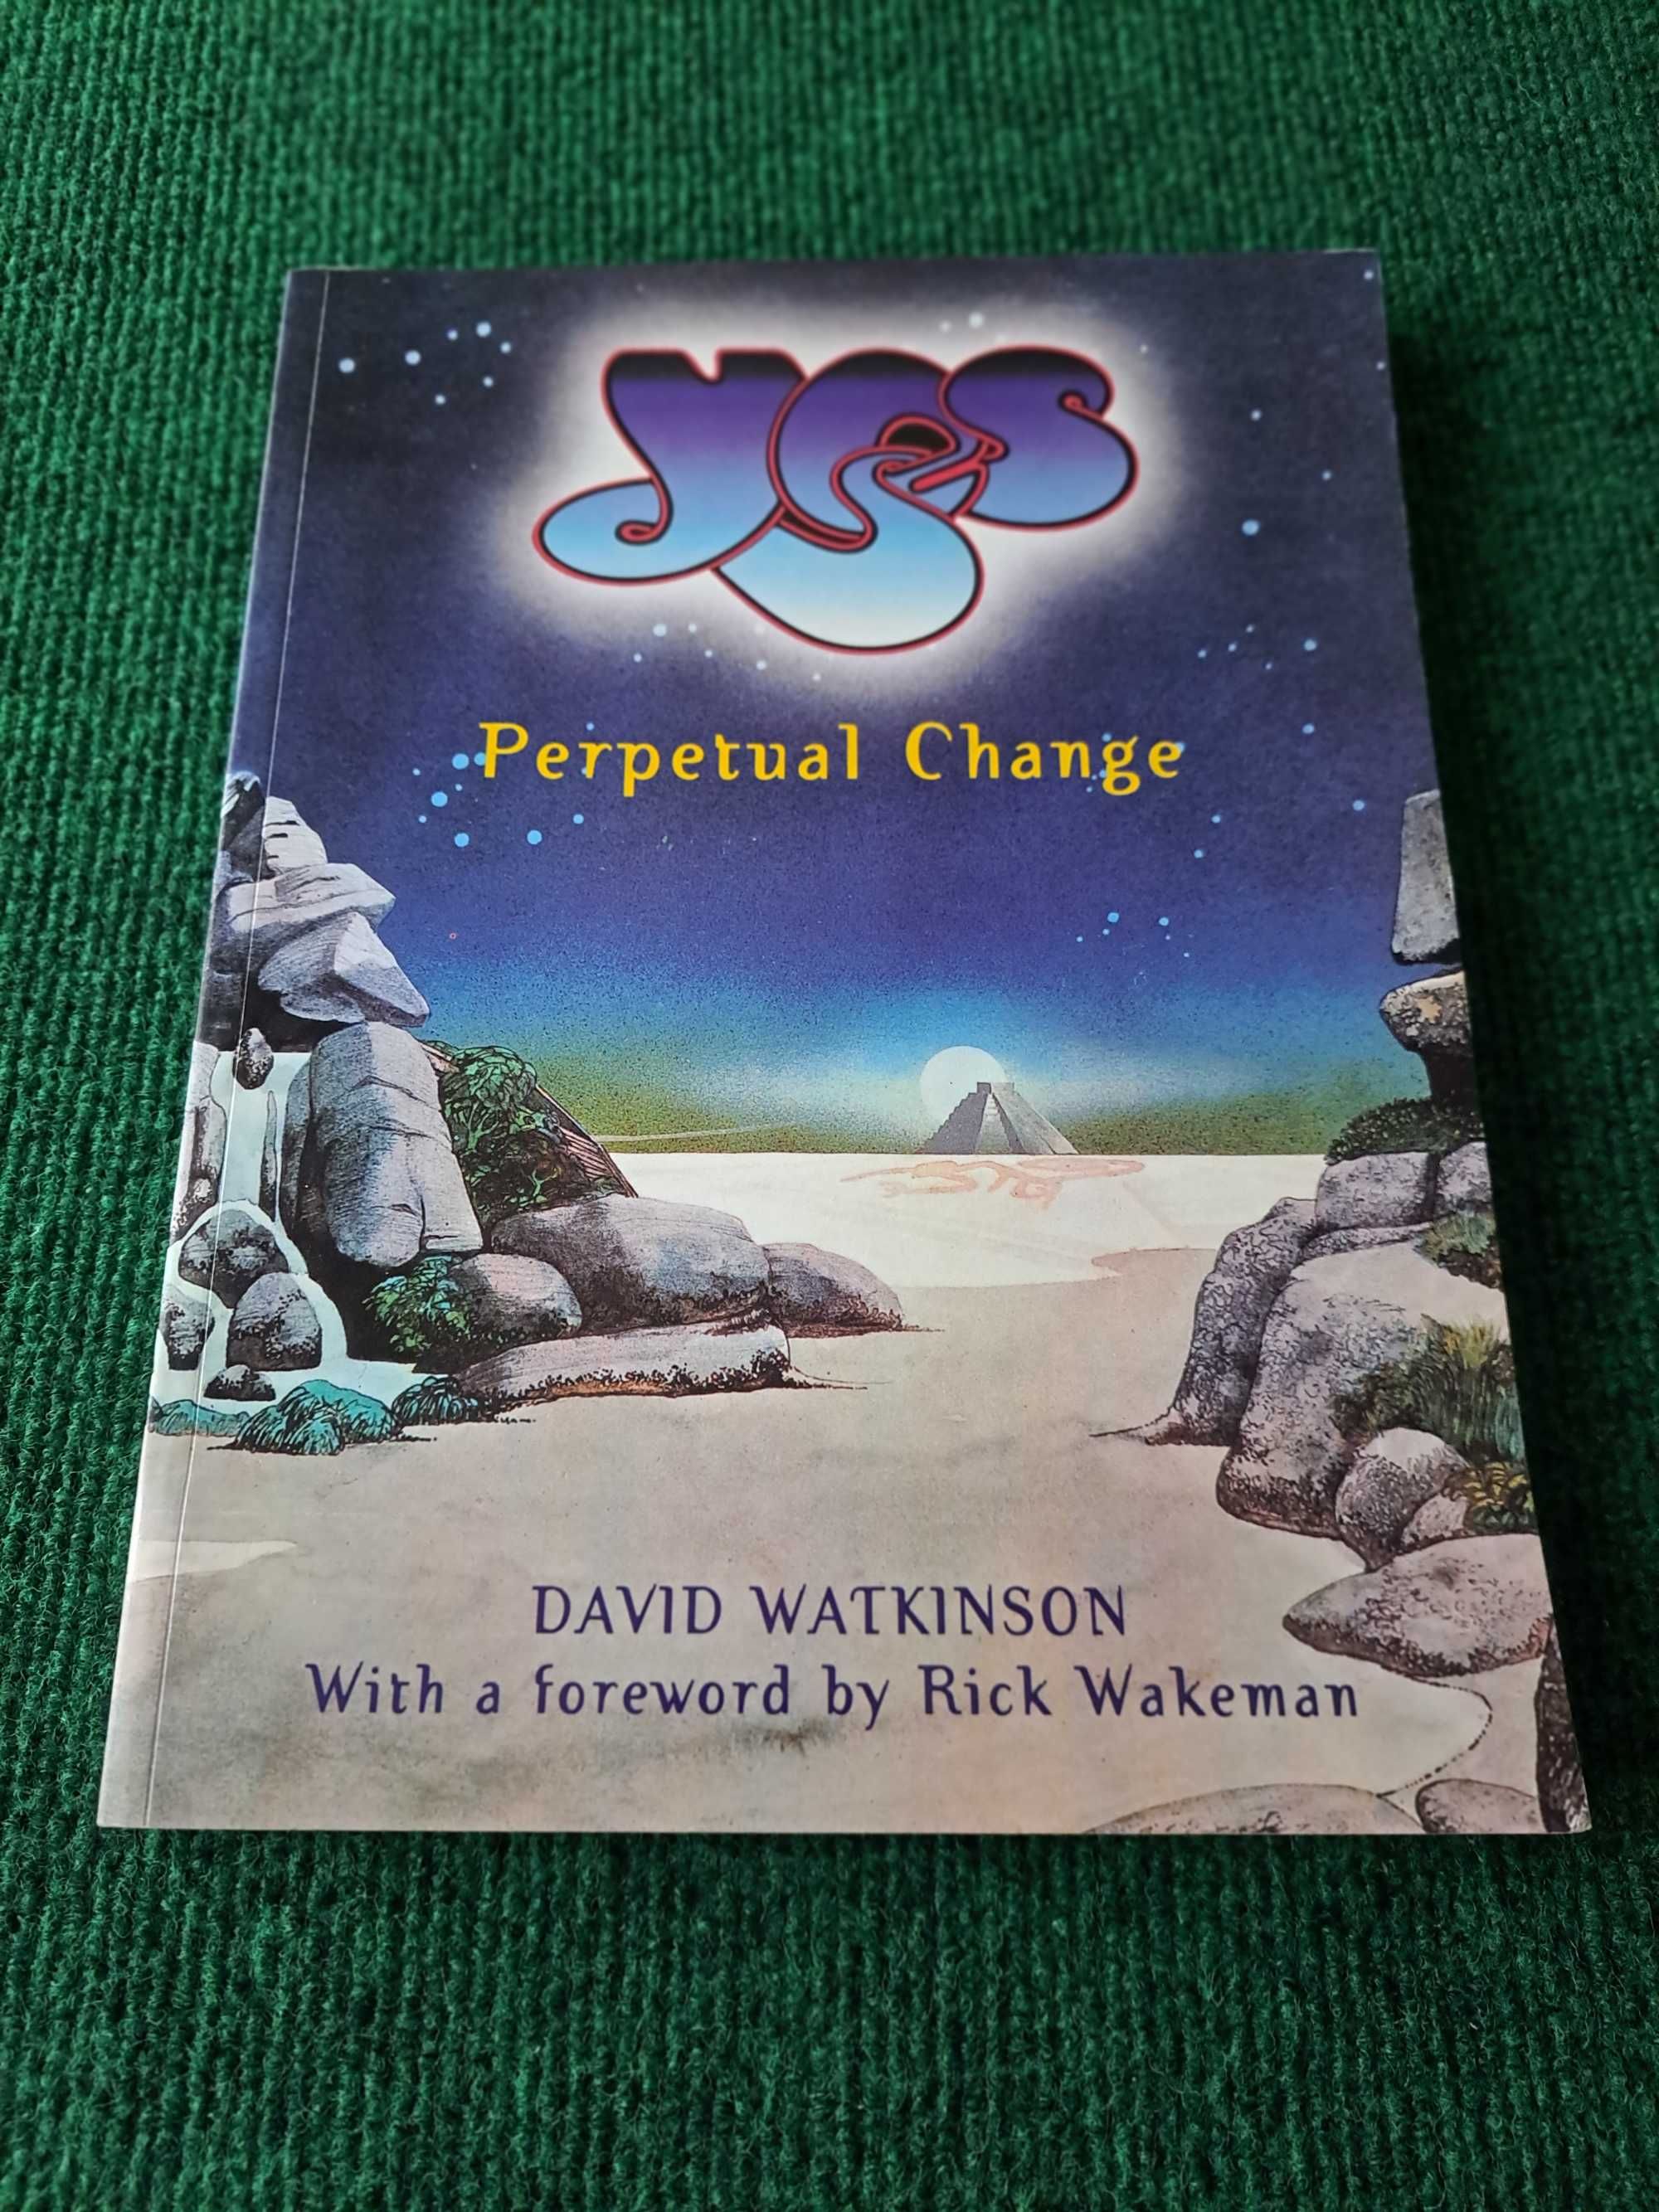 YES - Perpetual Change - David Watkinson